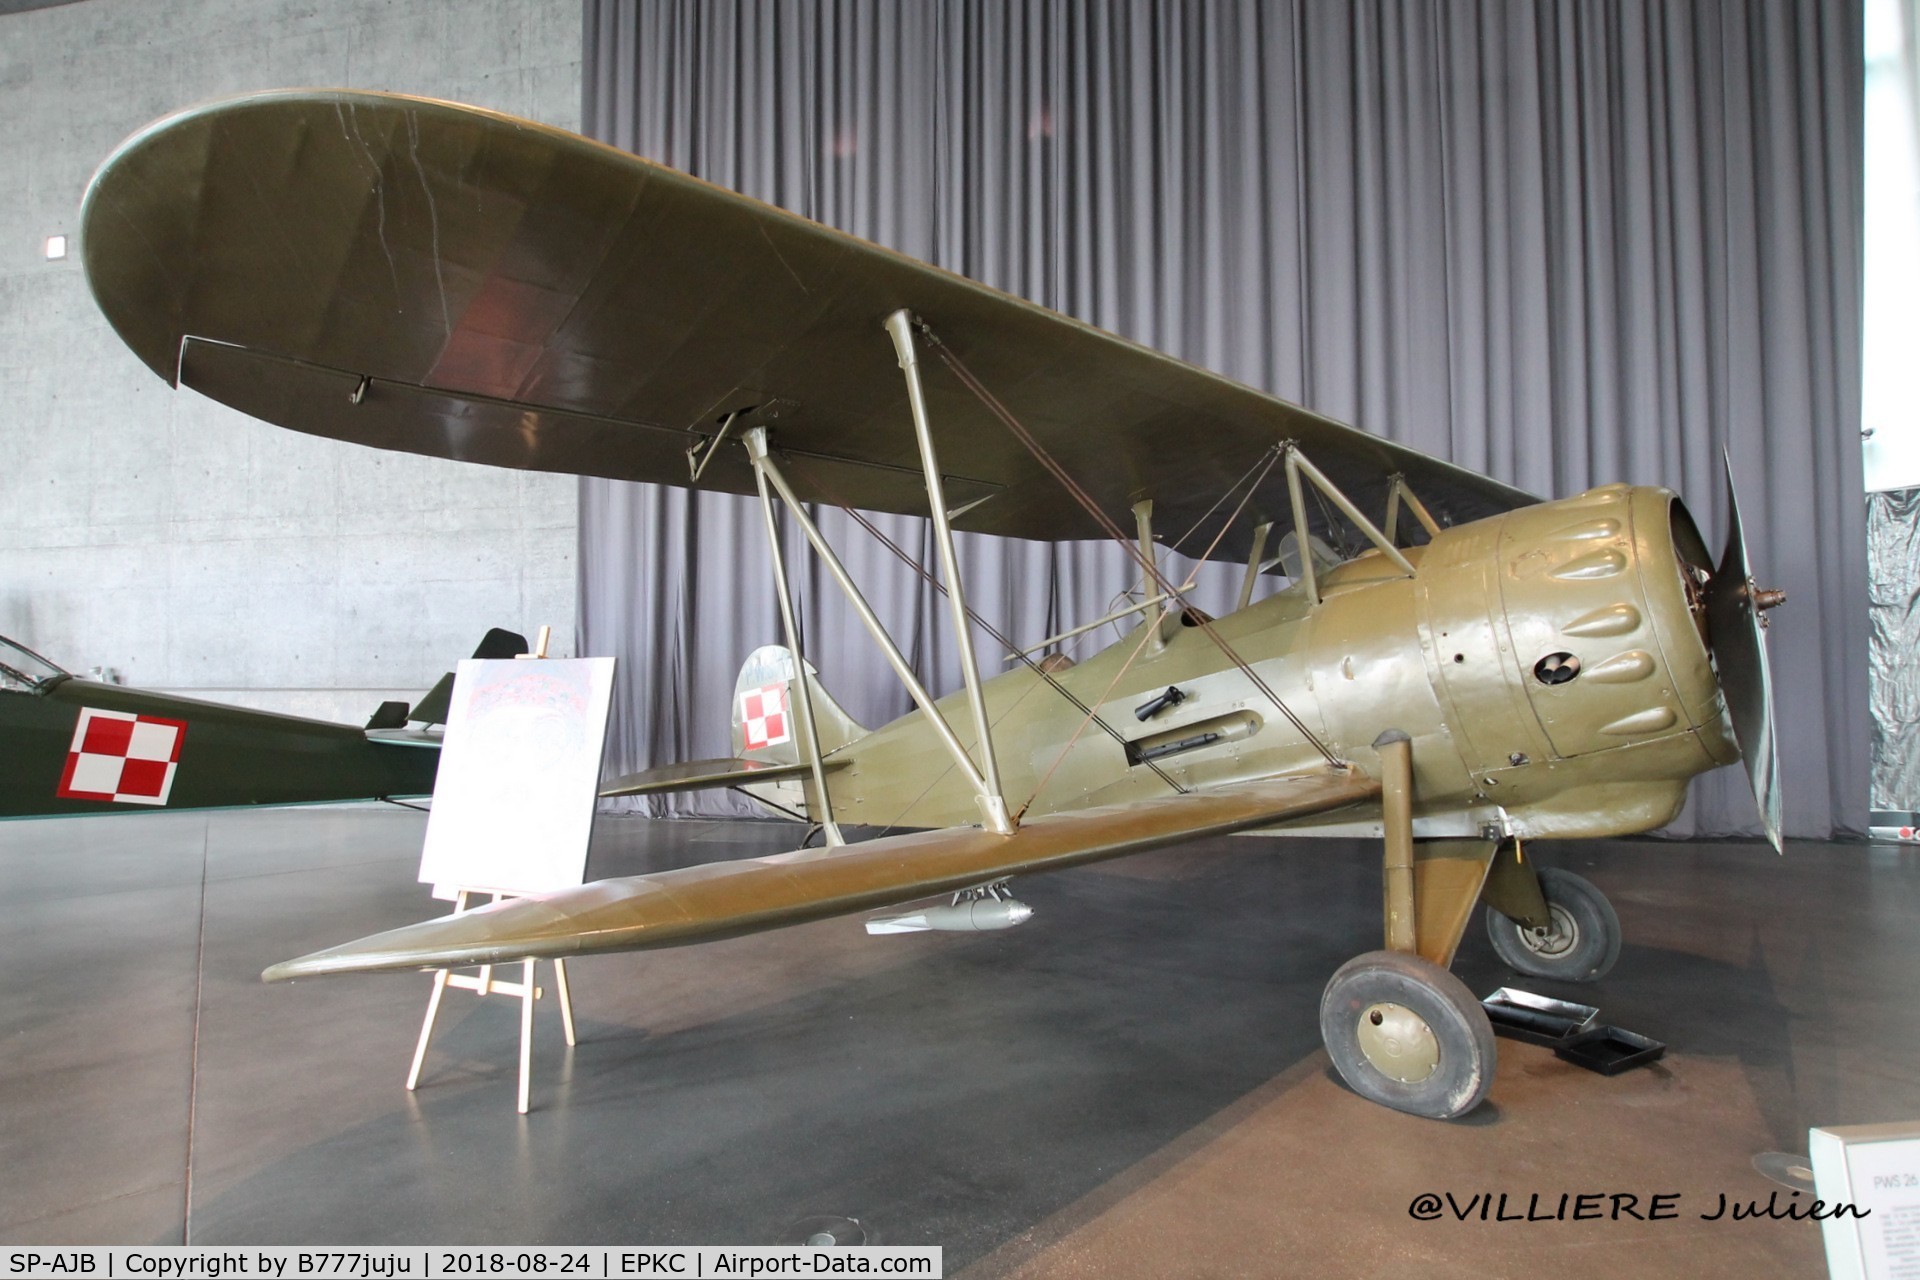 SP-AJB, 1937 Podlanska Wytwomia Samolotow (PWS) PWS 26 C/N 81-123, at Cracovie